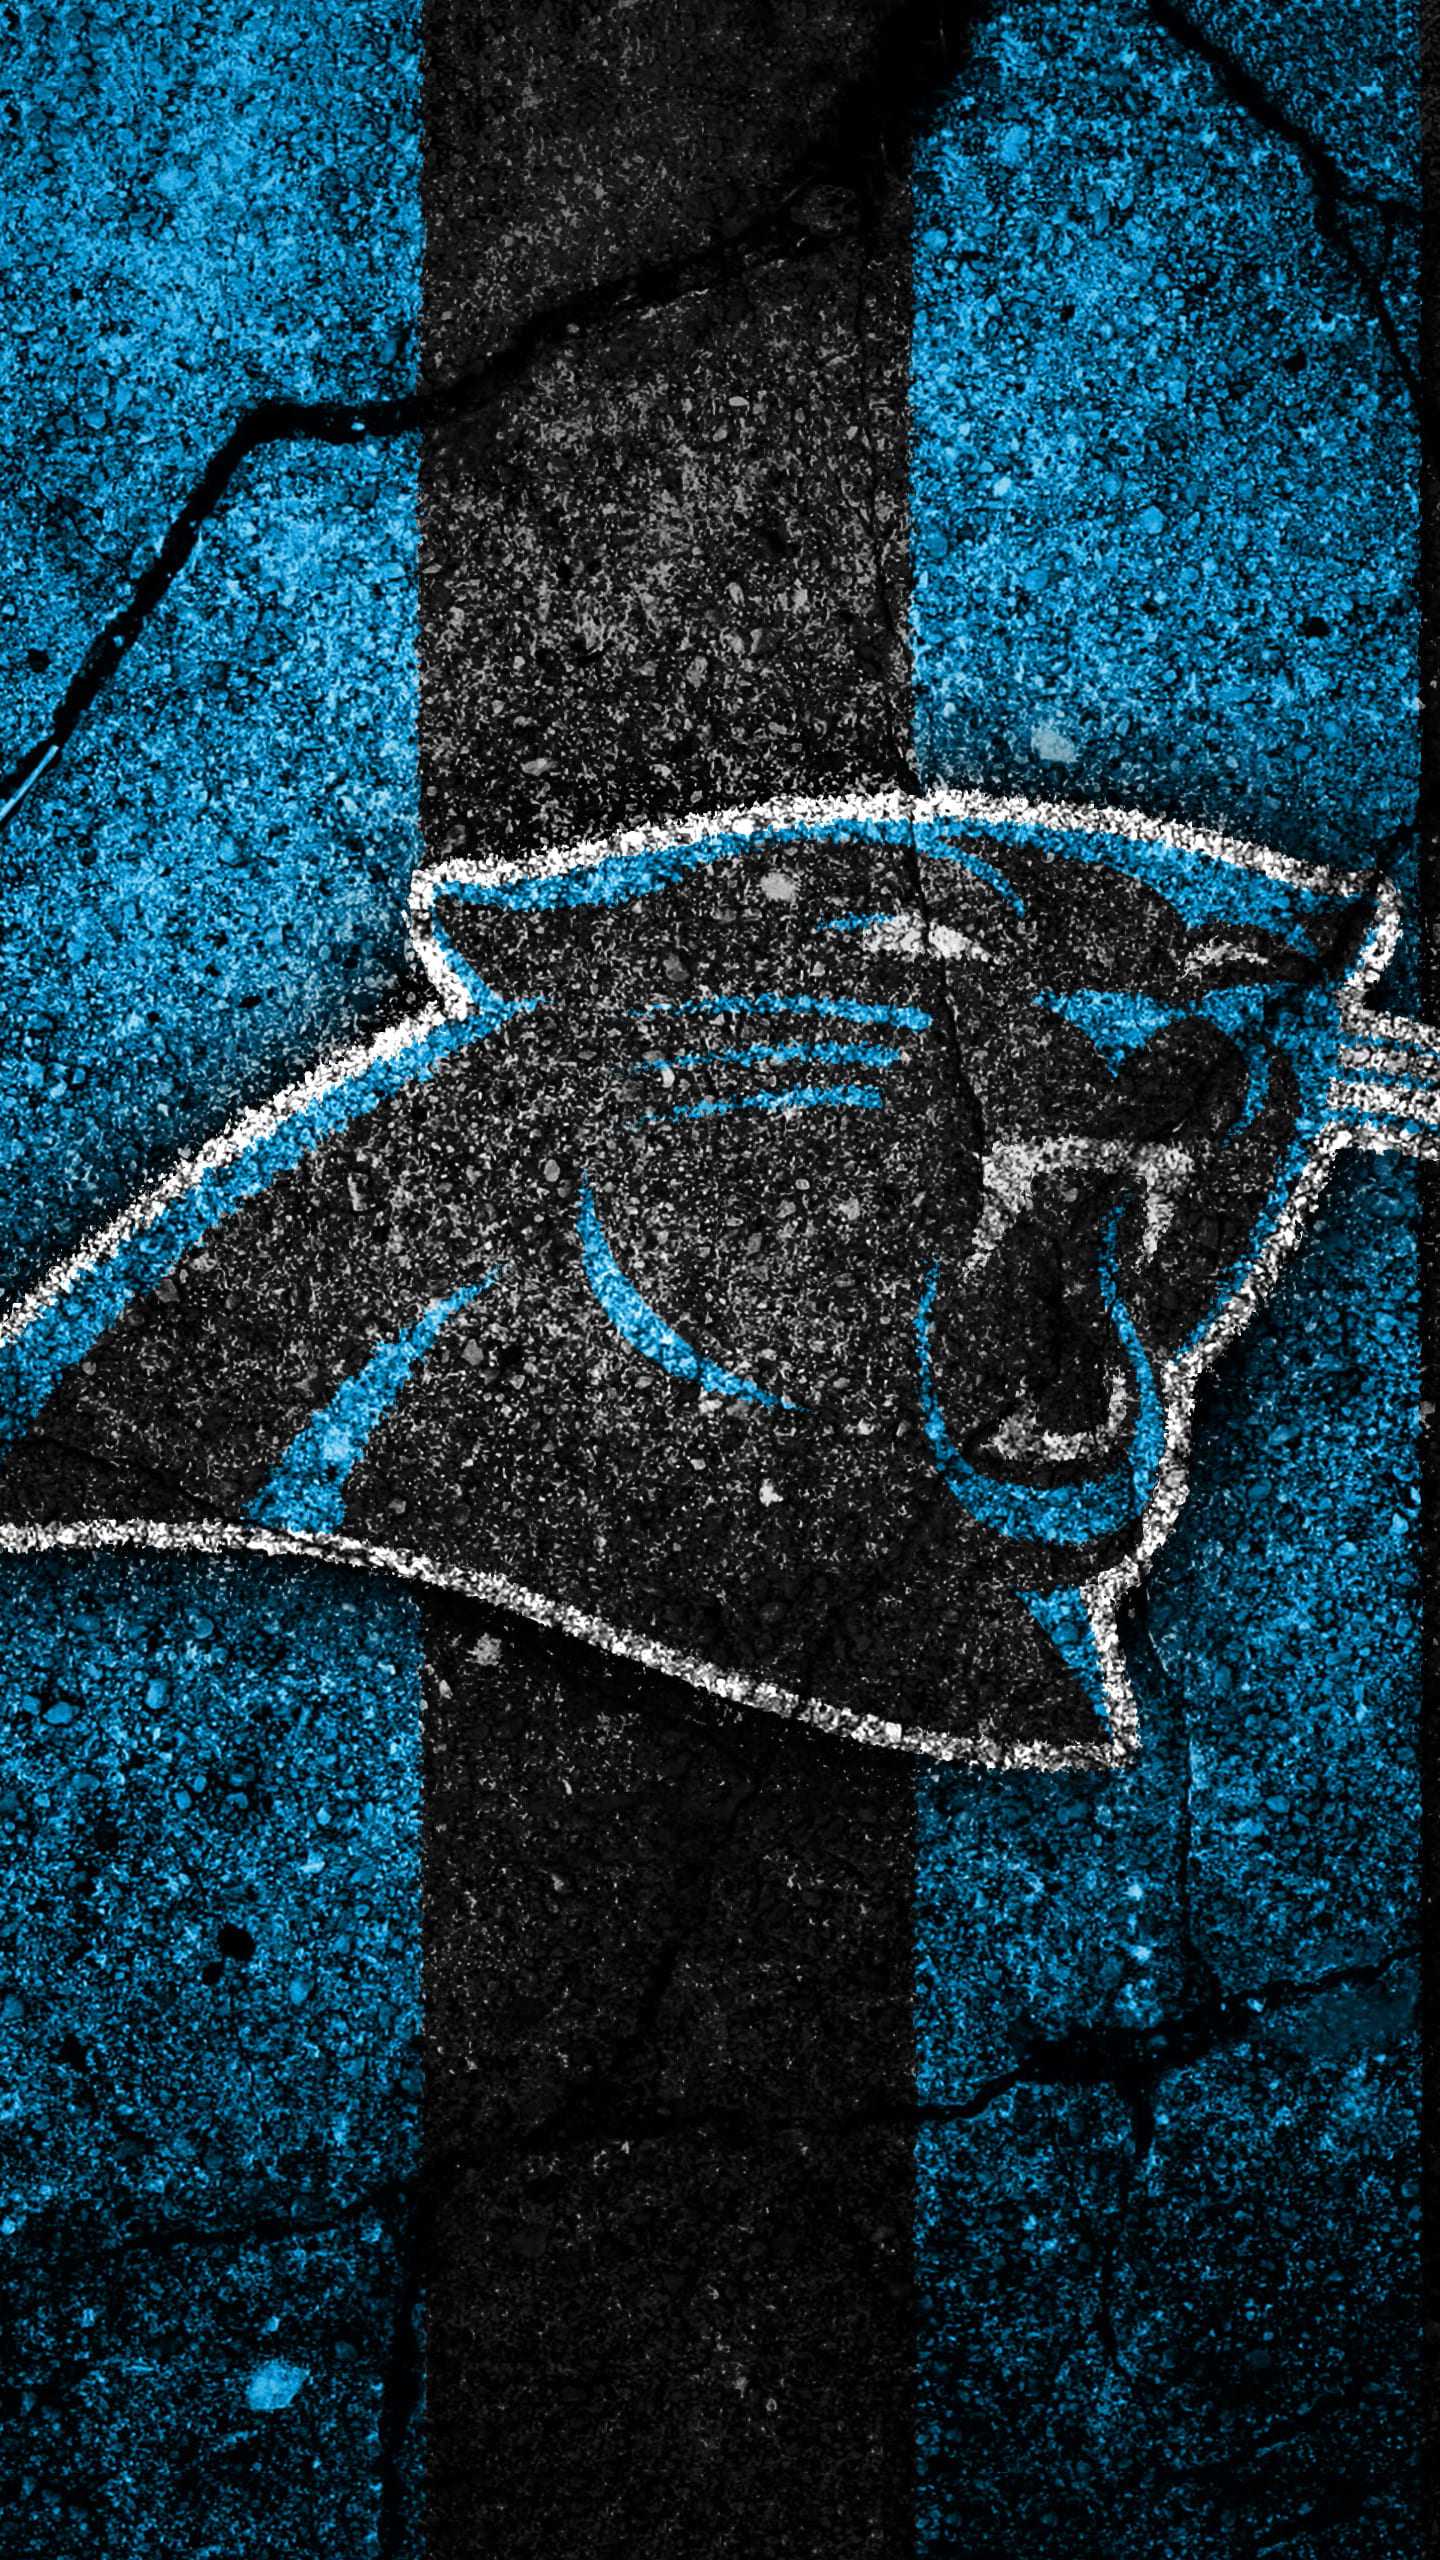 Carolina Panthers wallpaper iPhone